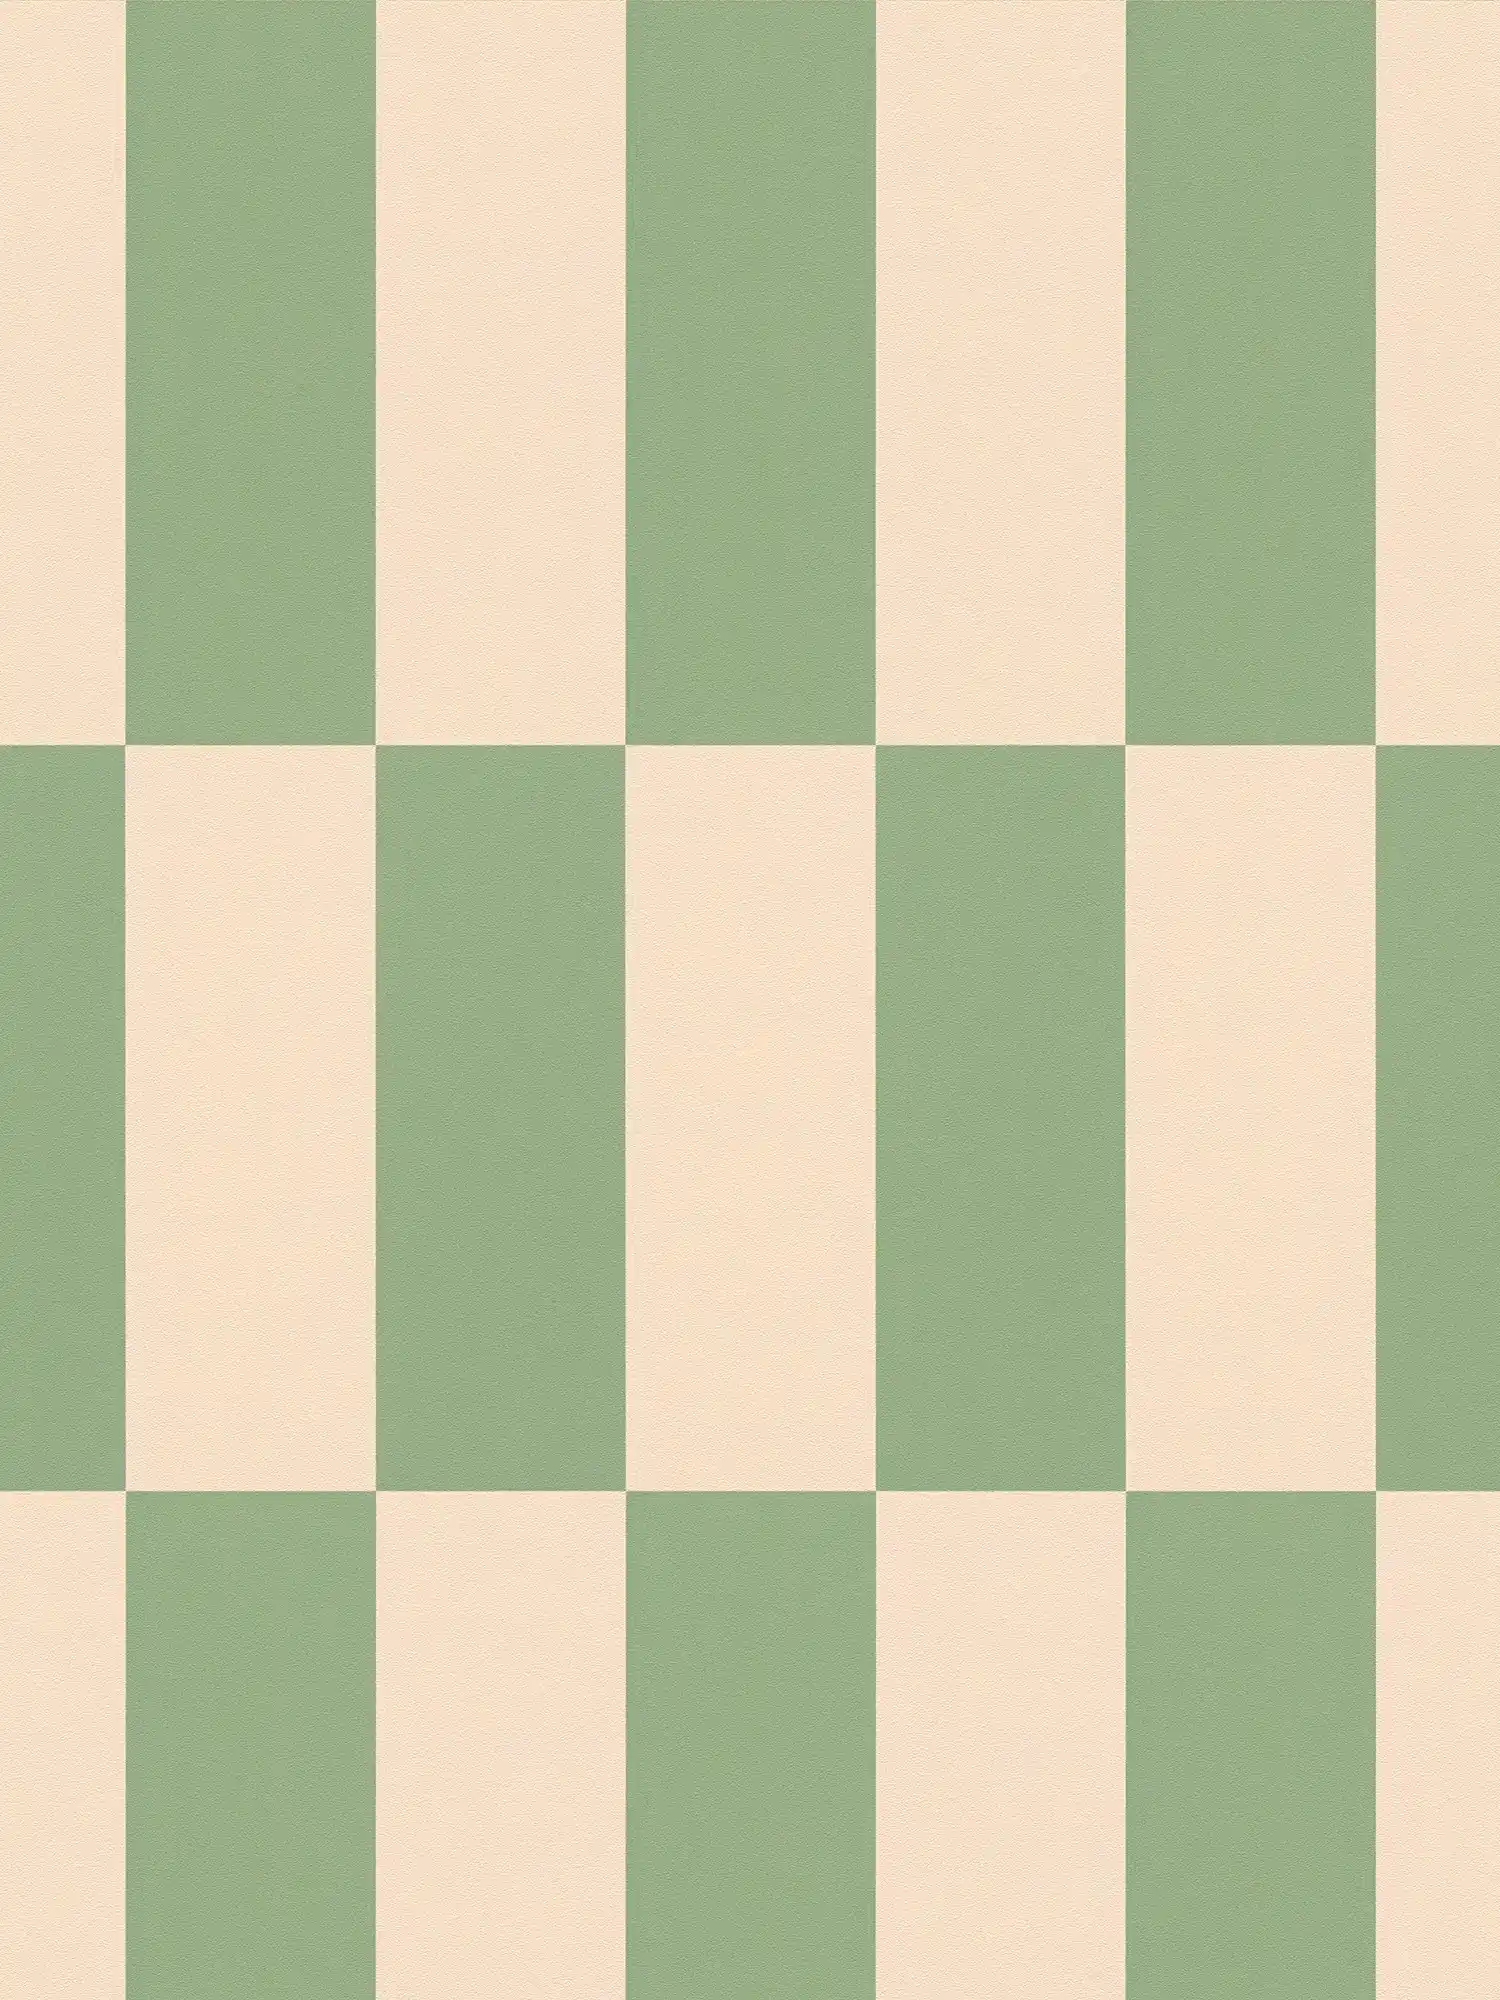         Carta da parati in tessuto non tessuto a quadri grafici bicolore - beige, verde
    